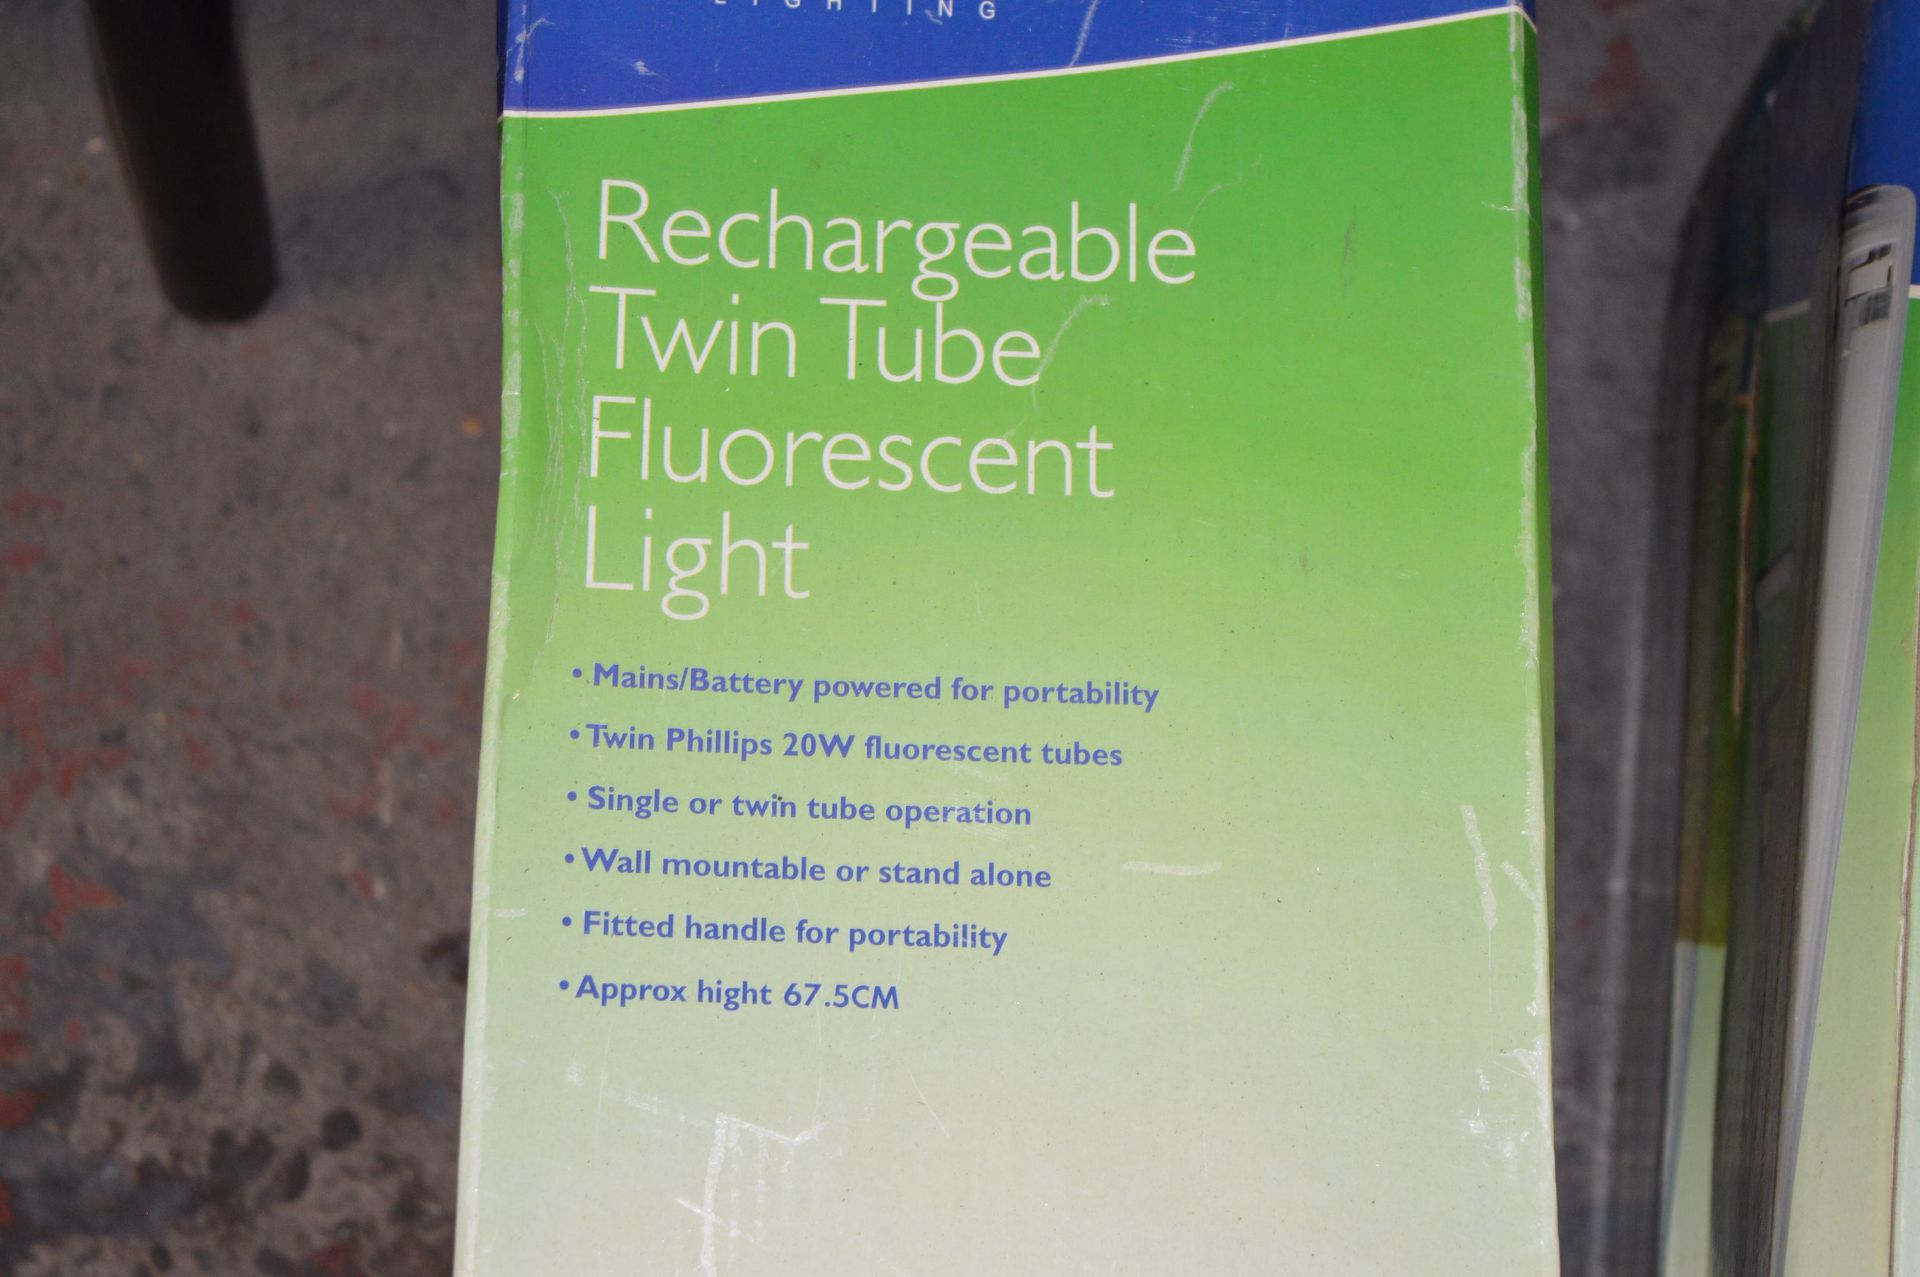 Four Benross Recharagble Twin Tube Fluorescent Lig - Image 2 of 2